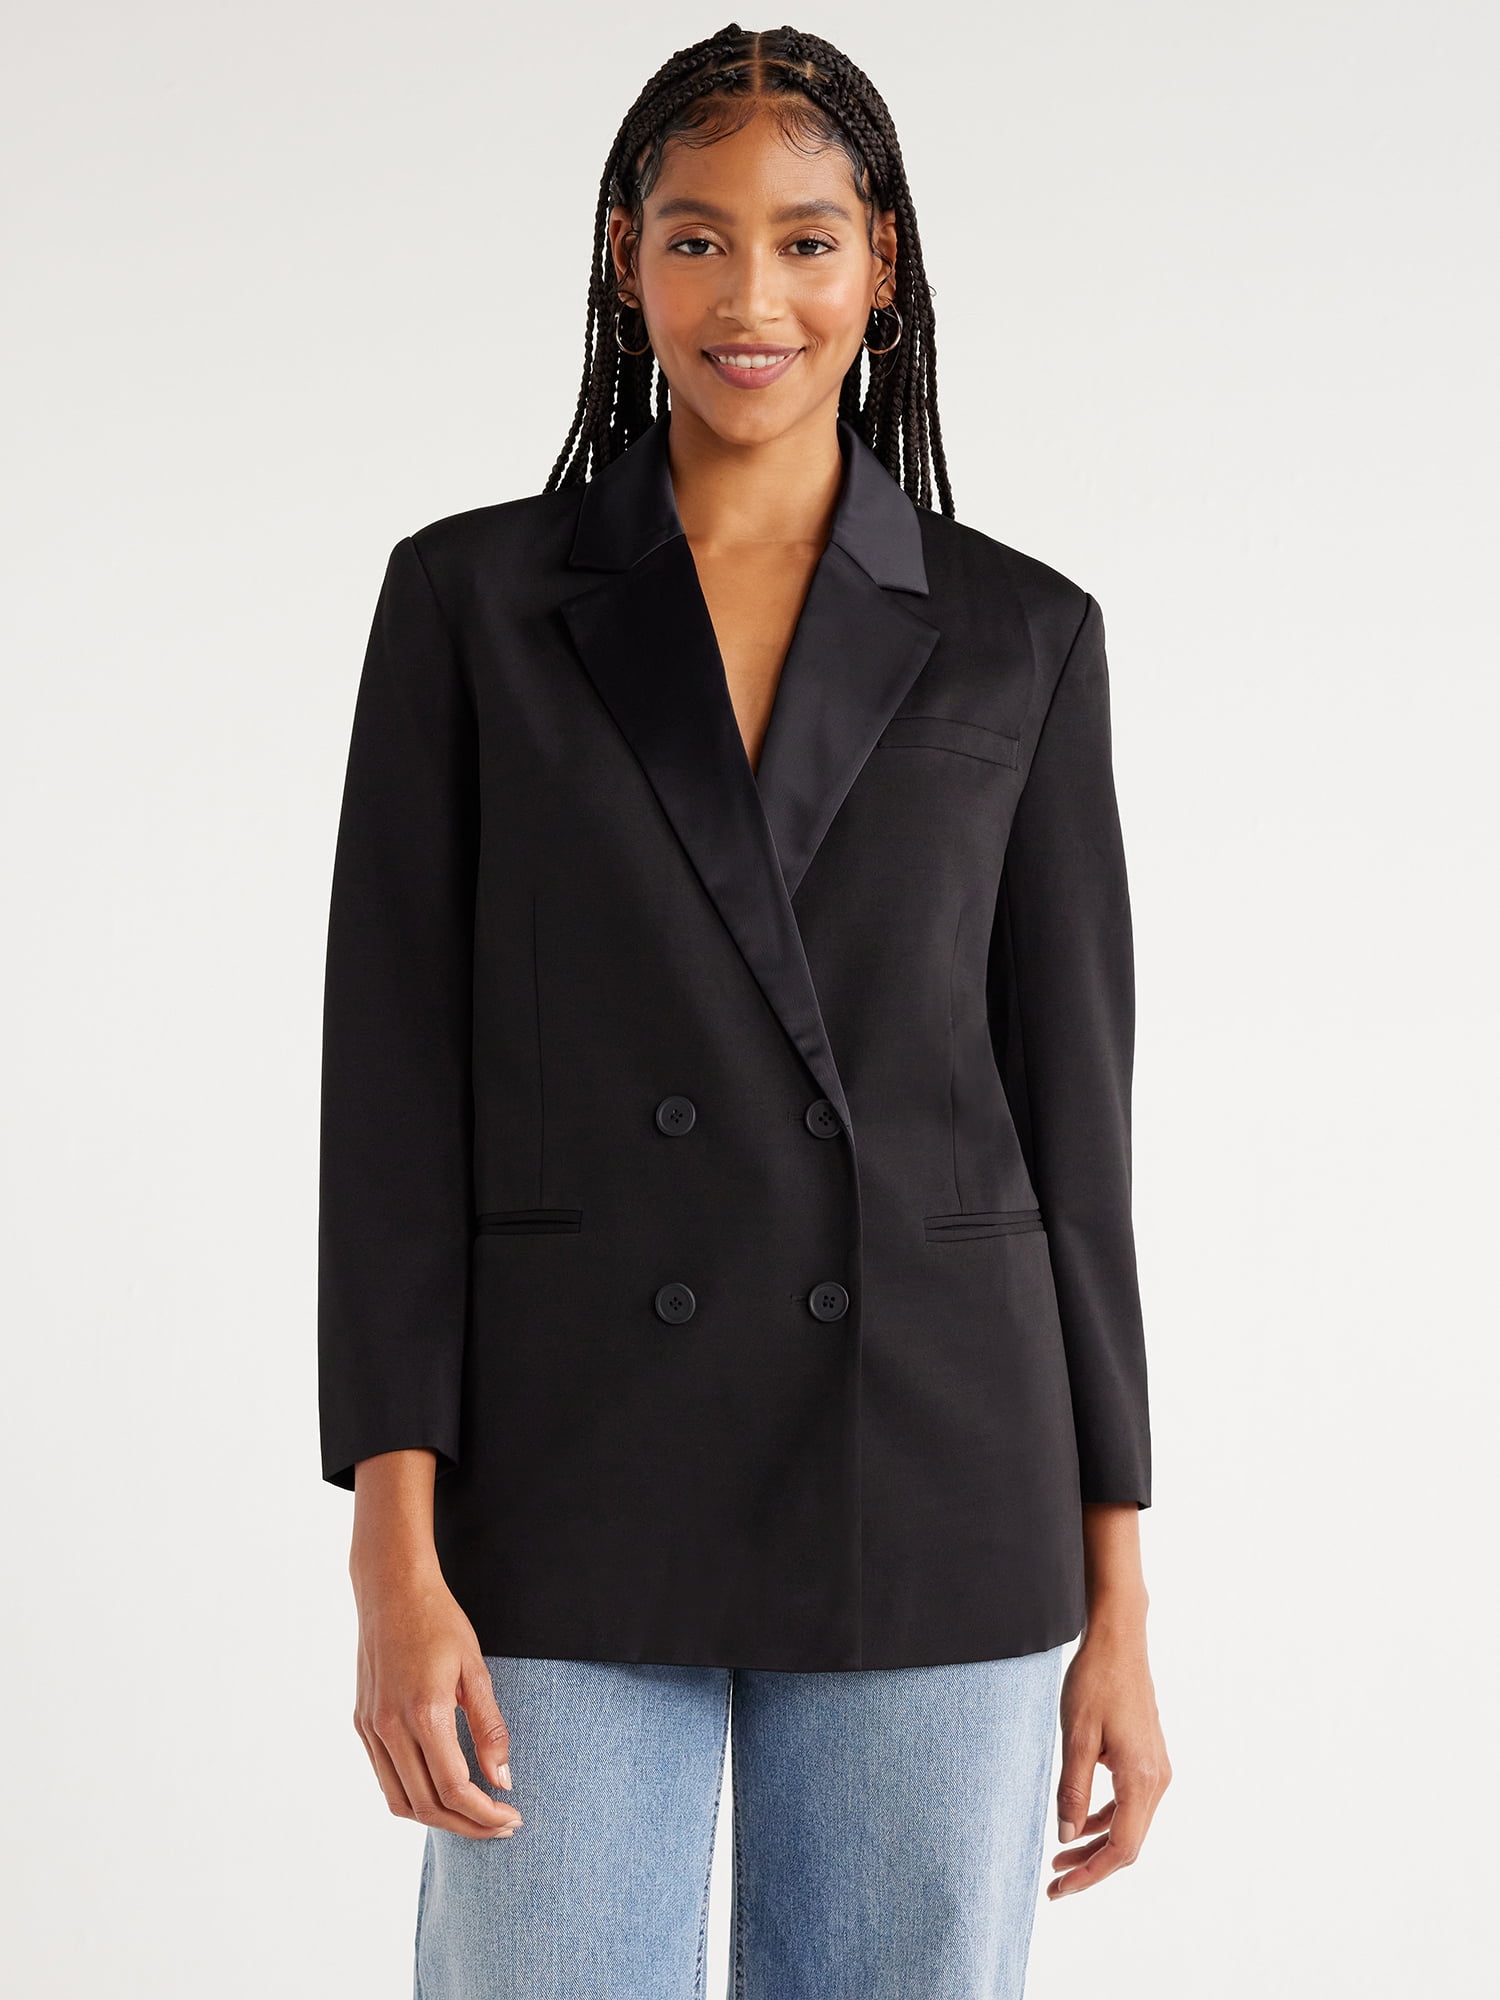 Scoop Women’s Tuxedo Blazer, Midi Length, Sizes XS-XXL - Walmart.com